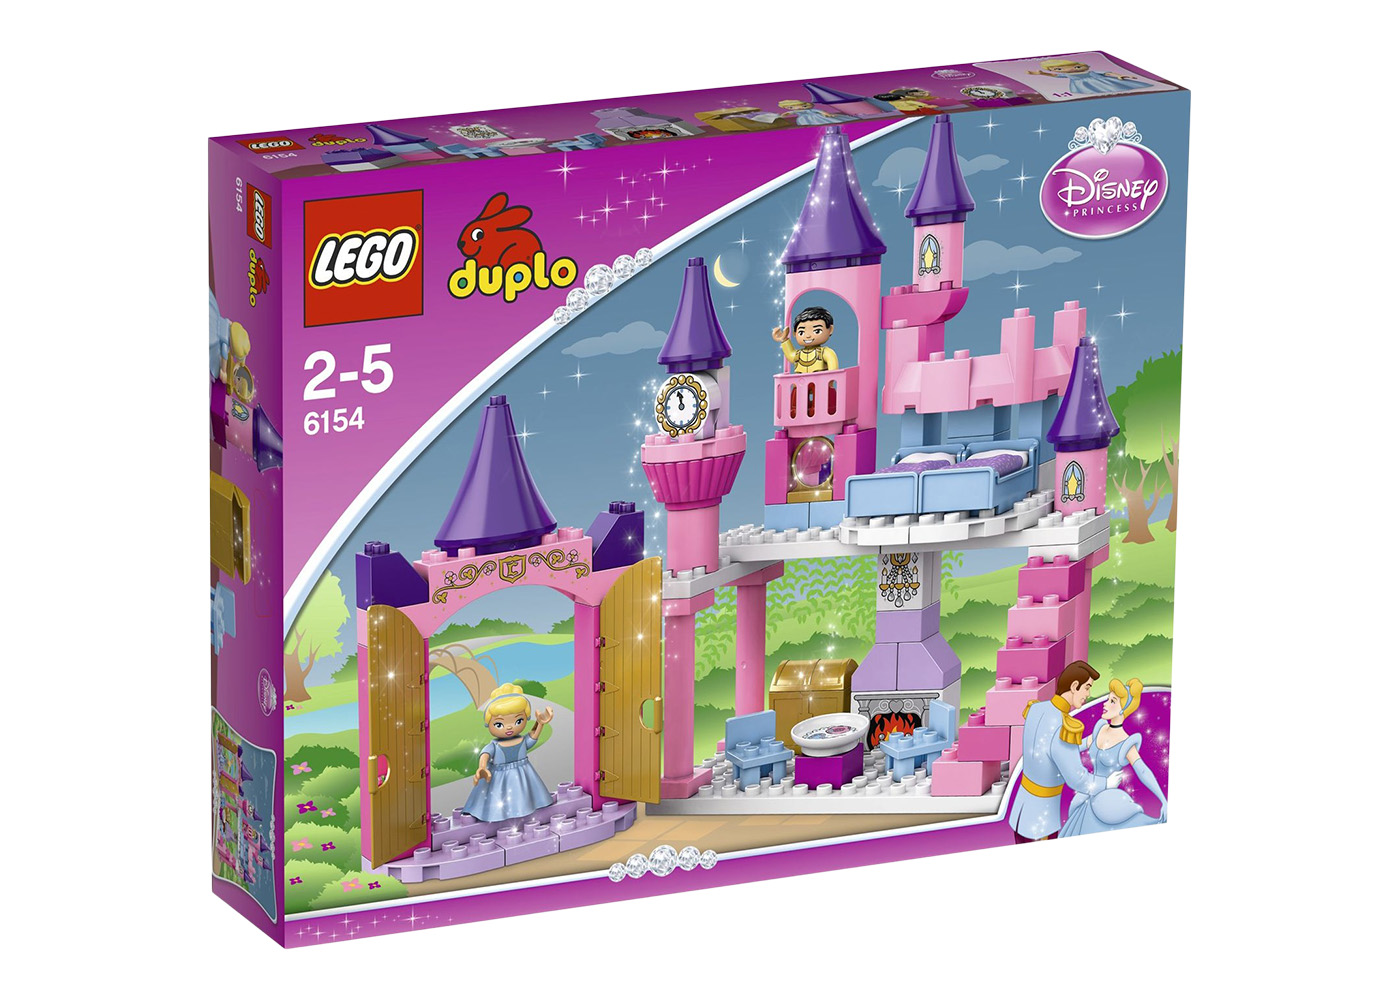 LEGO Duplo Cinderella's Castle Set 6154 - FW09 - US